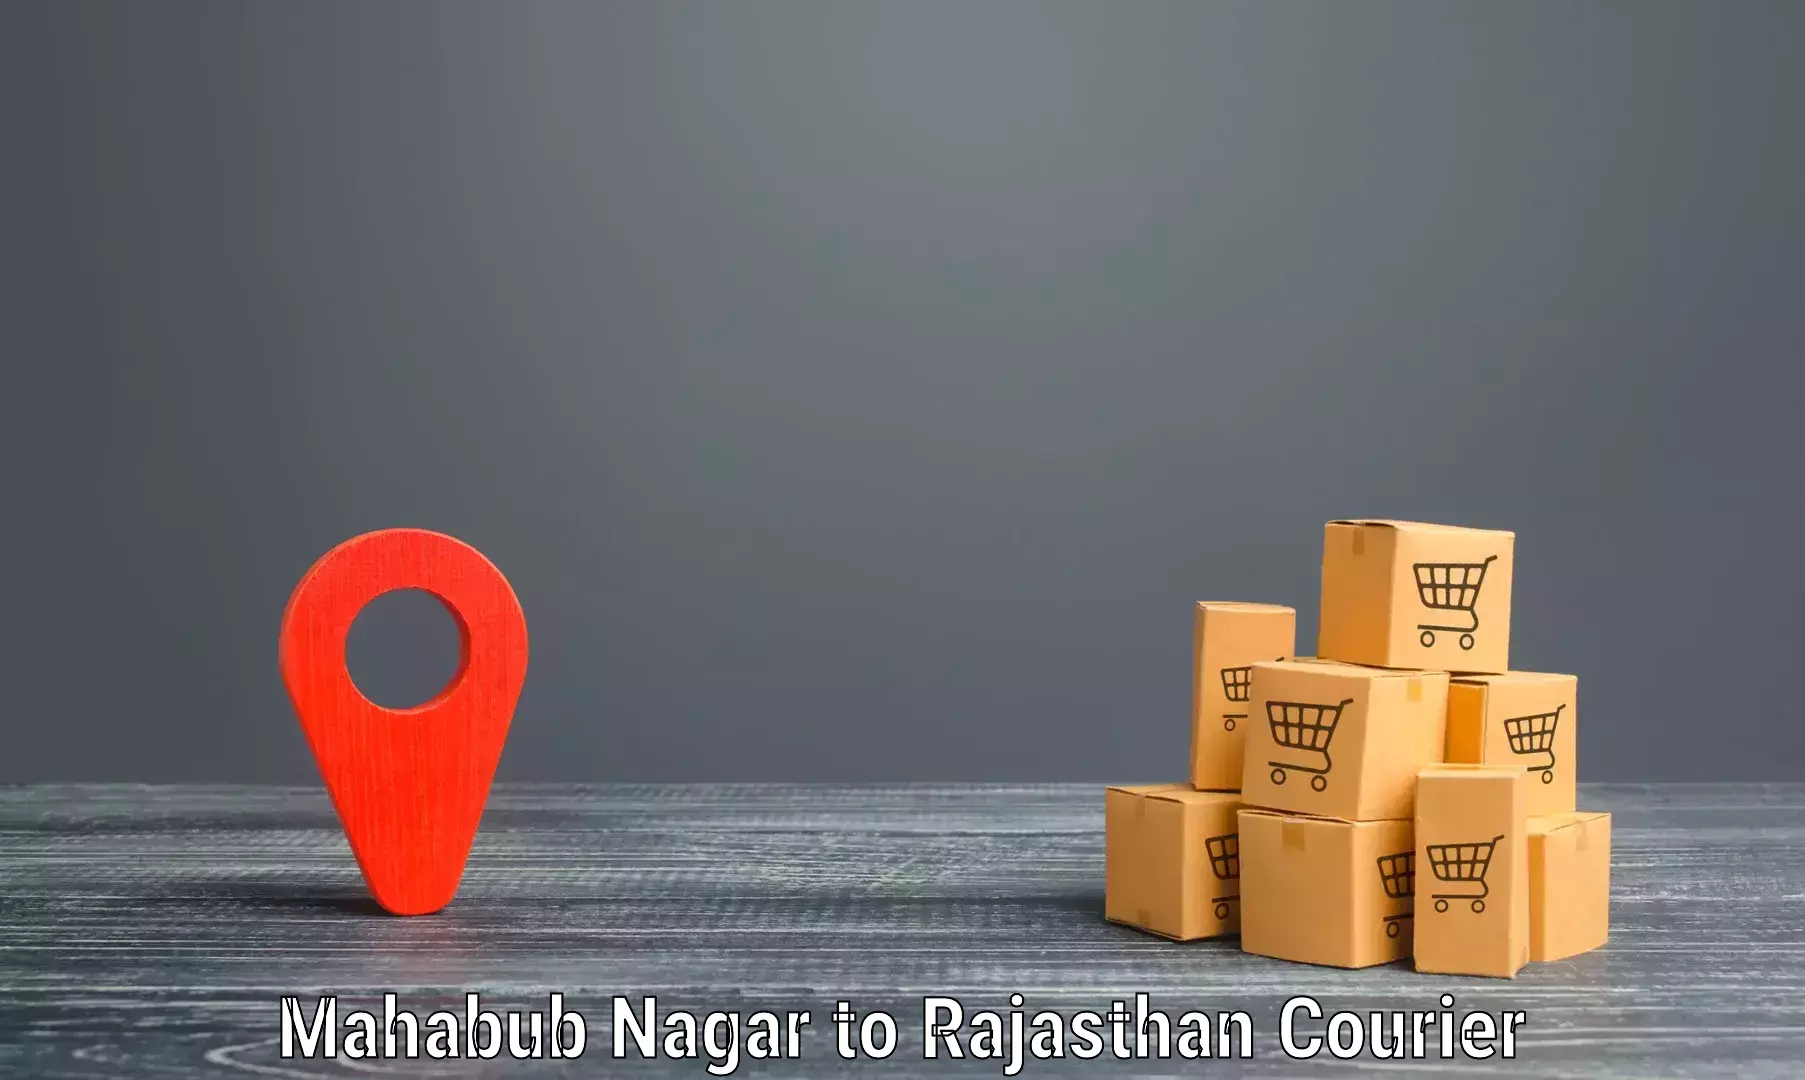 Flexible delivery schedules Mahabub Nagar to Nainwa